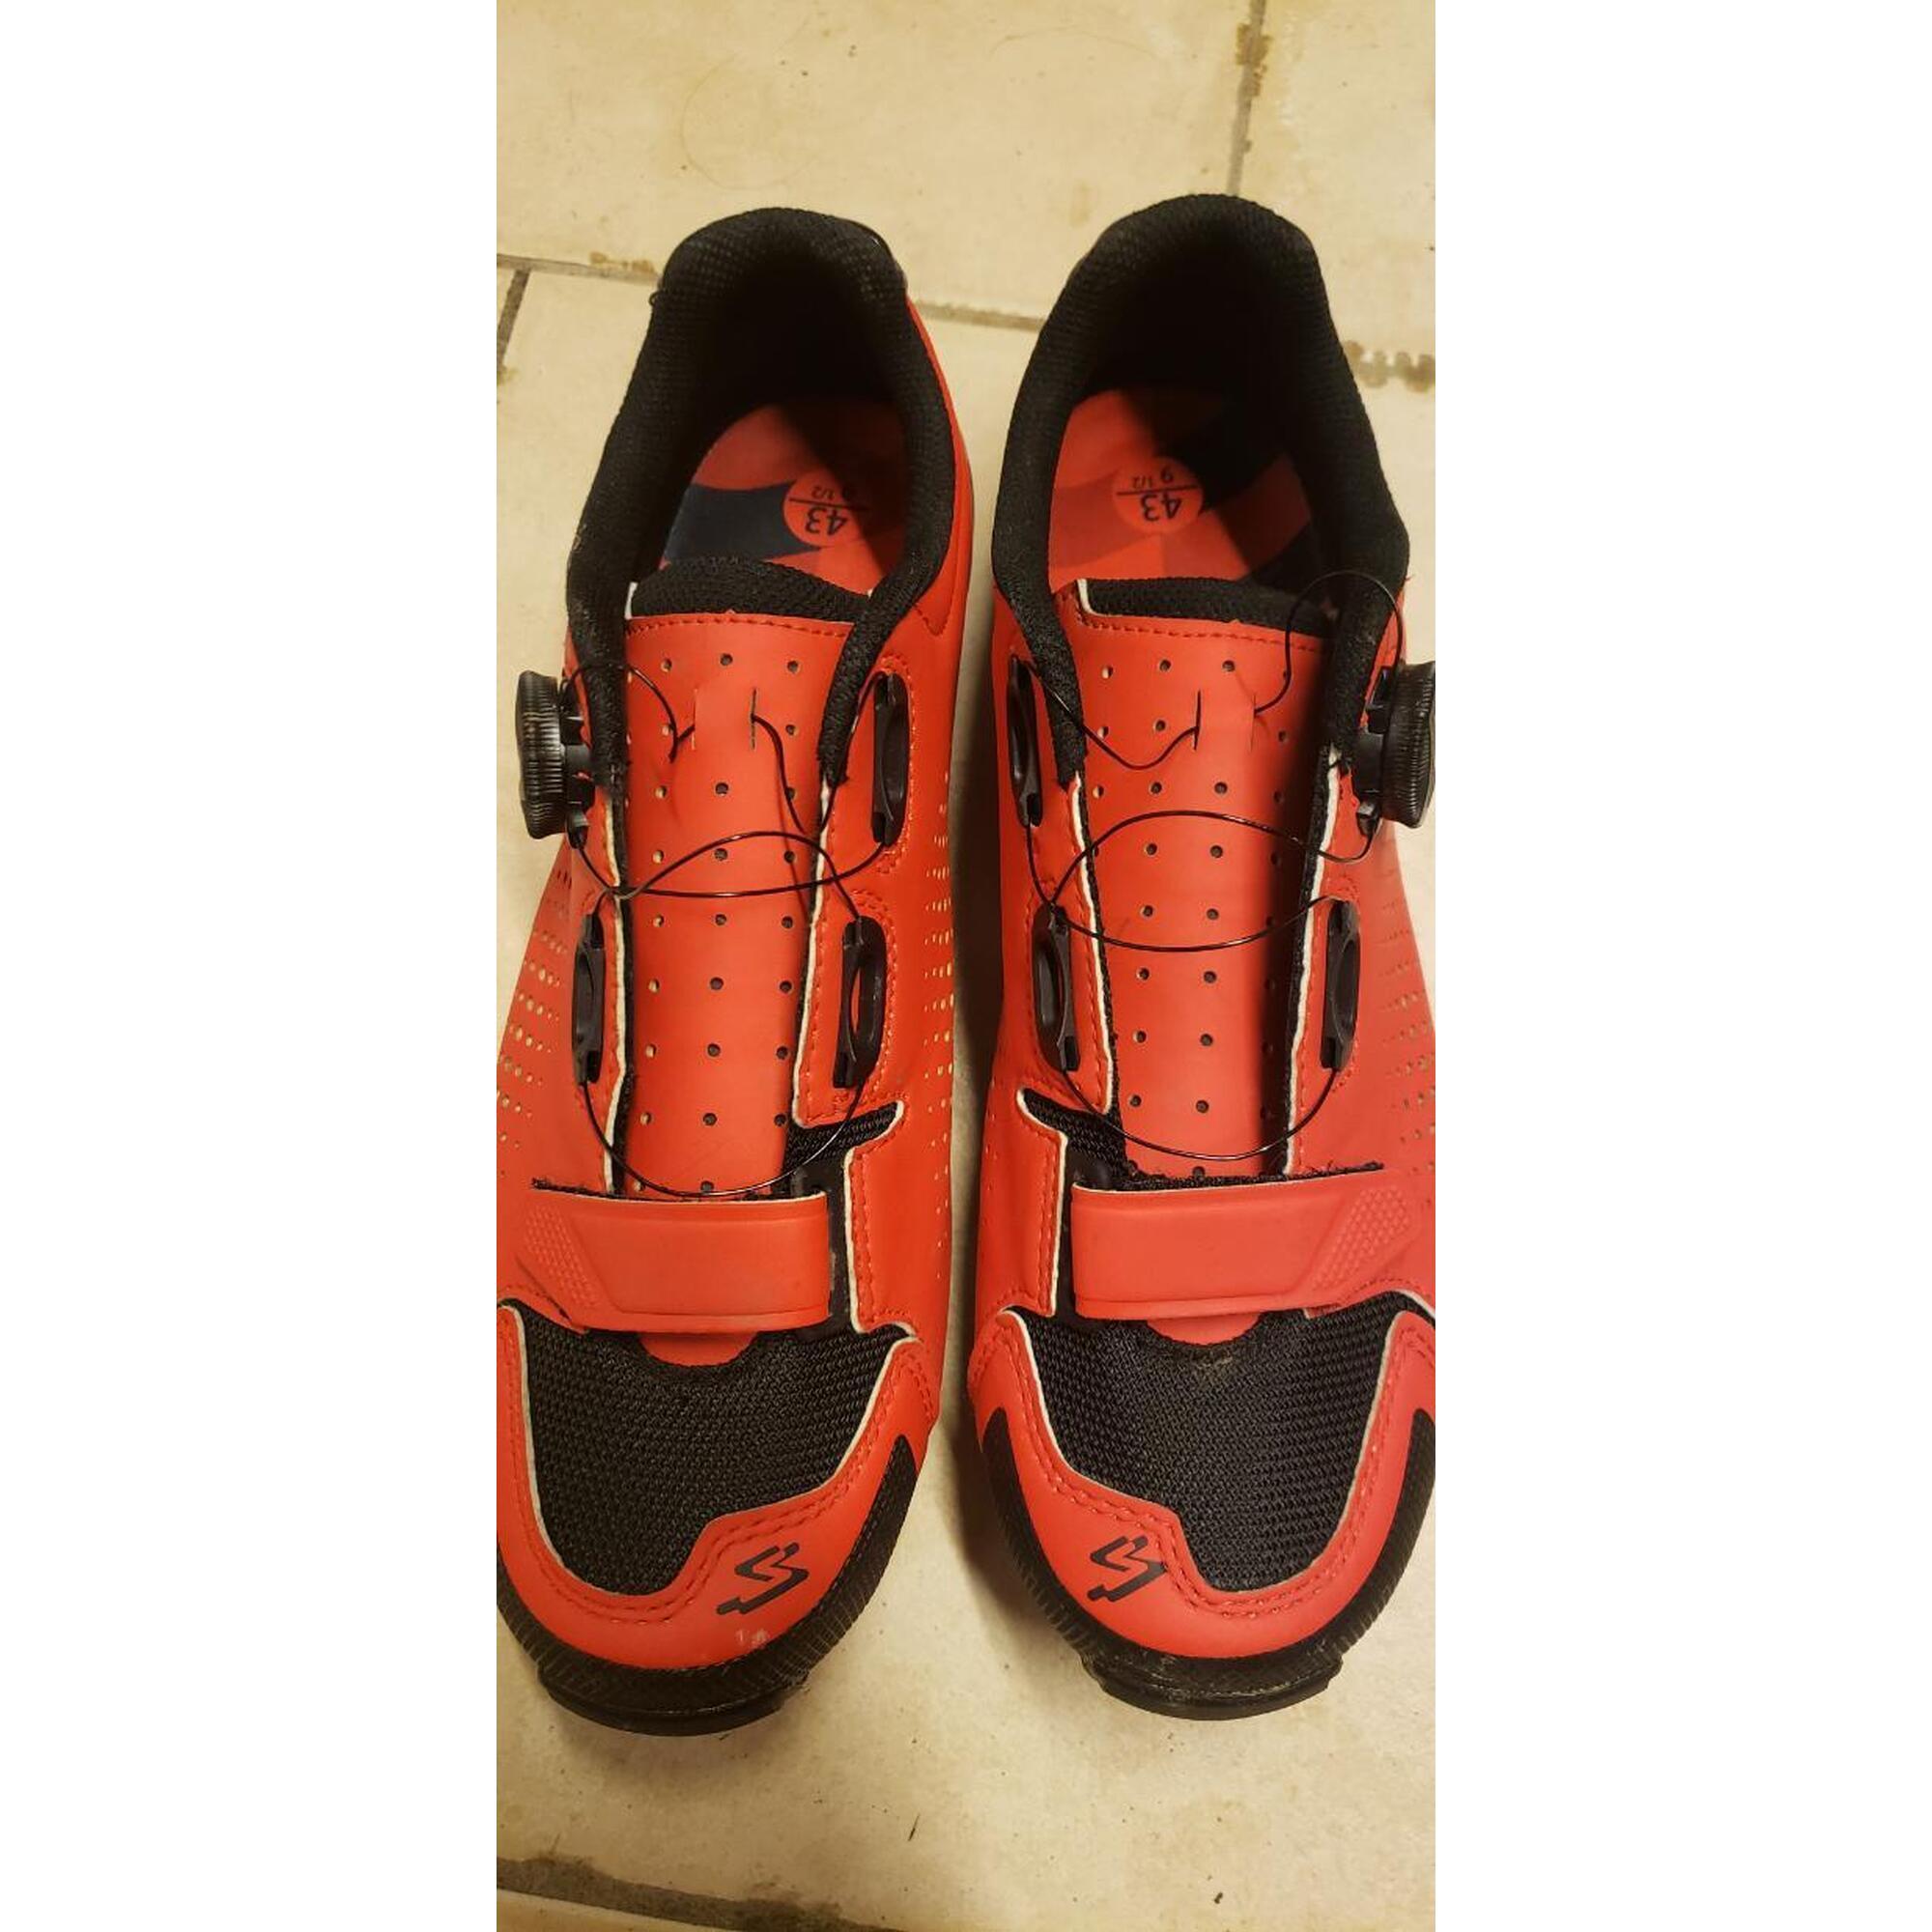 C2C - Chaussures Spiuk vtt/gravel rouge